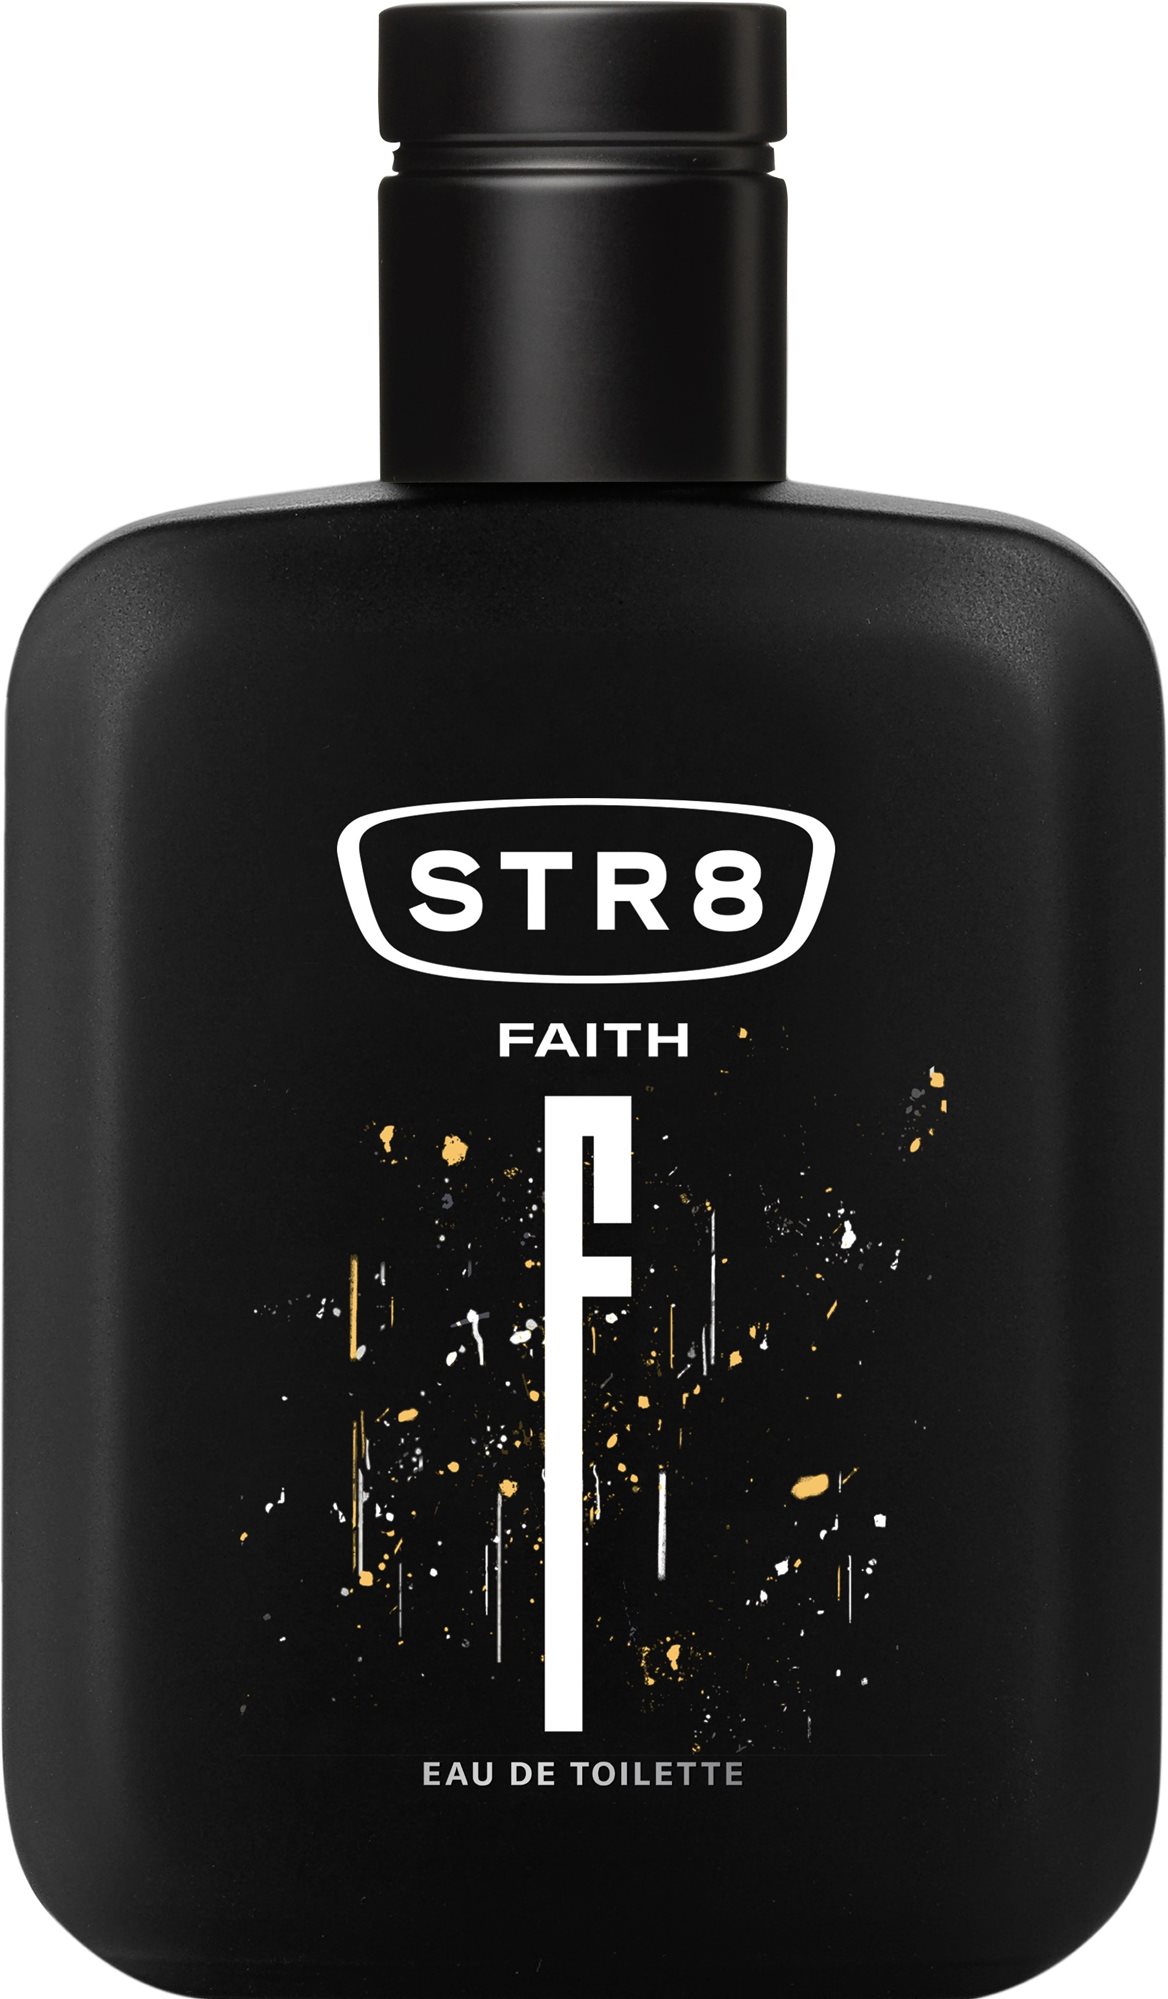 Eau de Toilette STR8 Faith EdT 100 ml